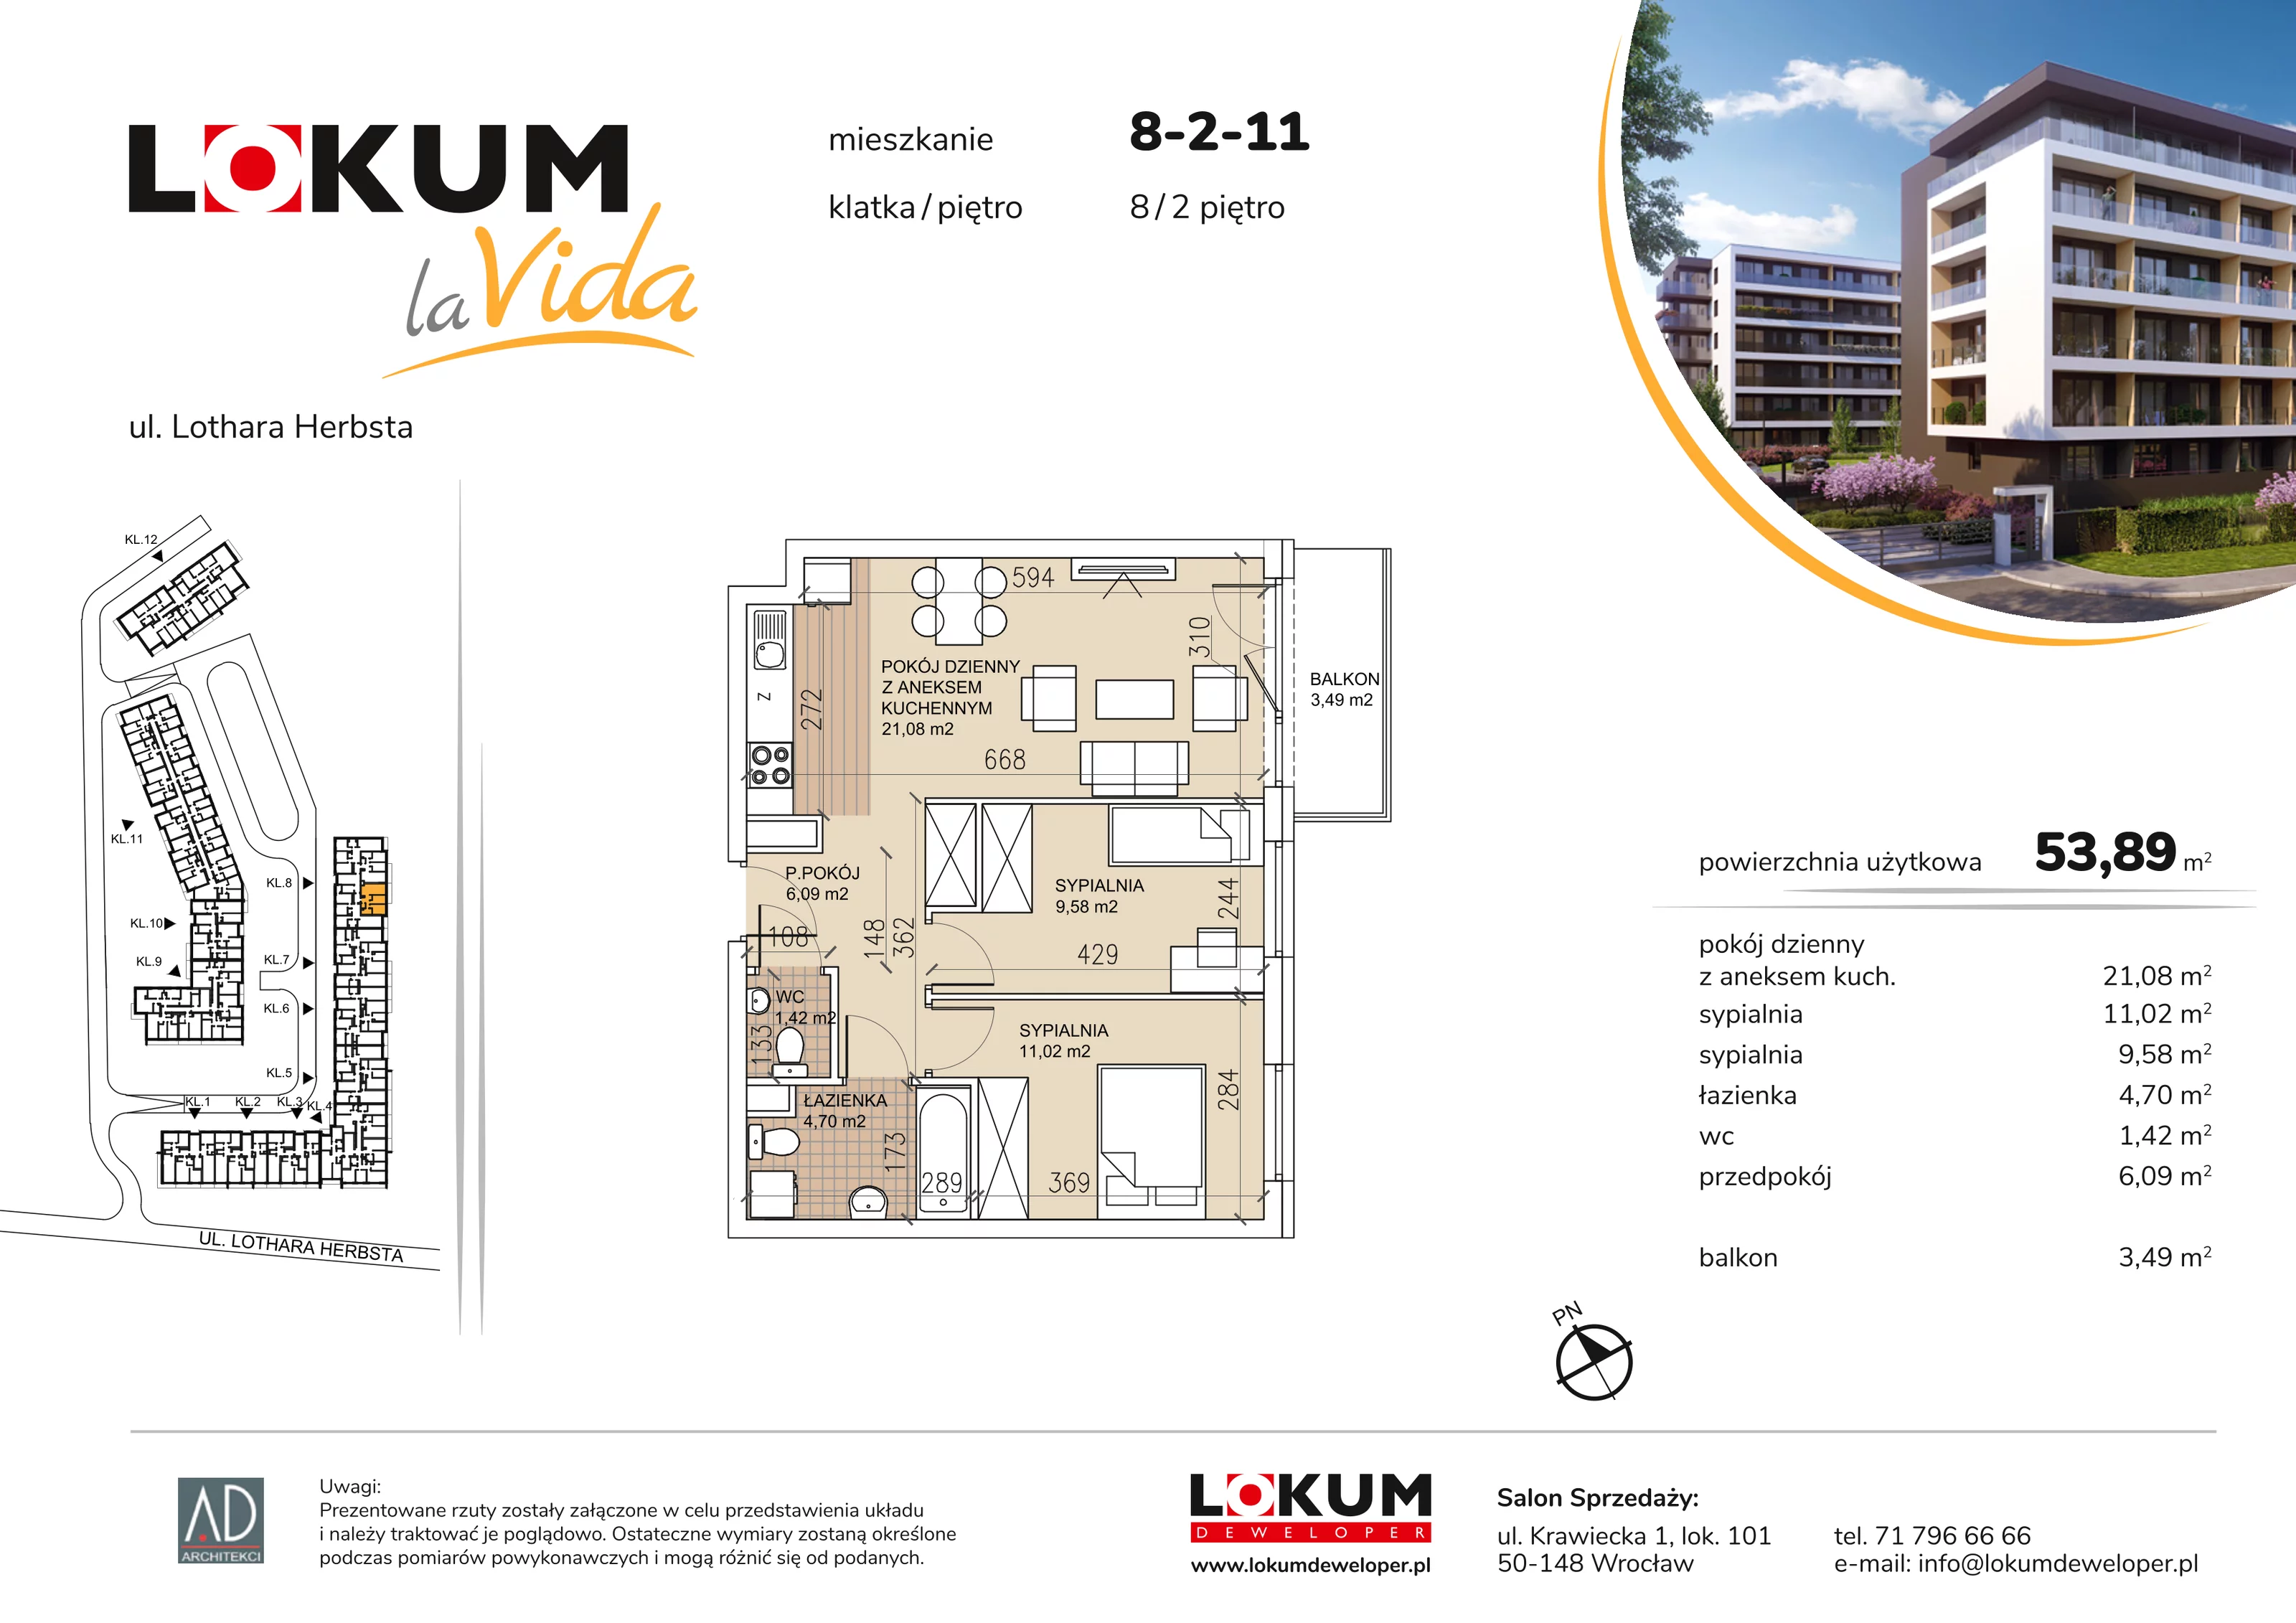 Mieszkanie 53,89 m², piętro 2, oferta nr 8-2-11, Lokum la Vida, Wrocław, Sołtysowice, ul. Lothara Herbsta